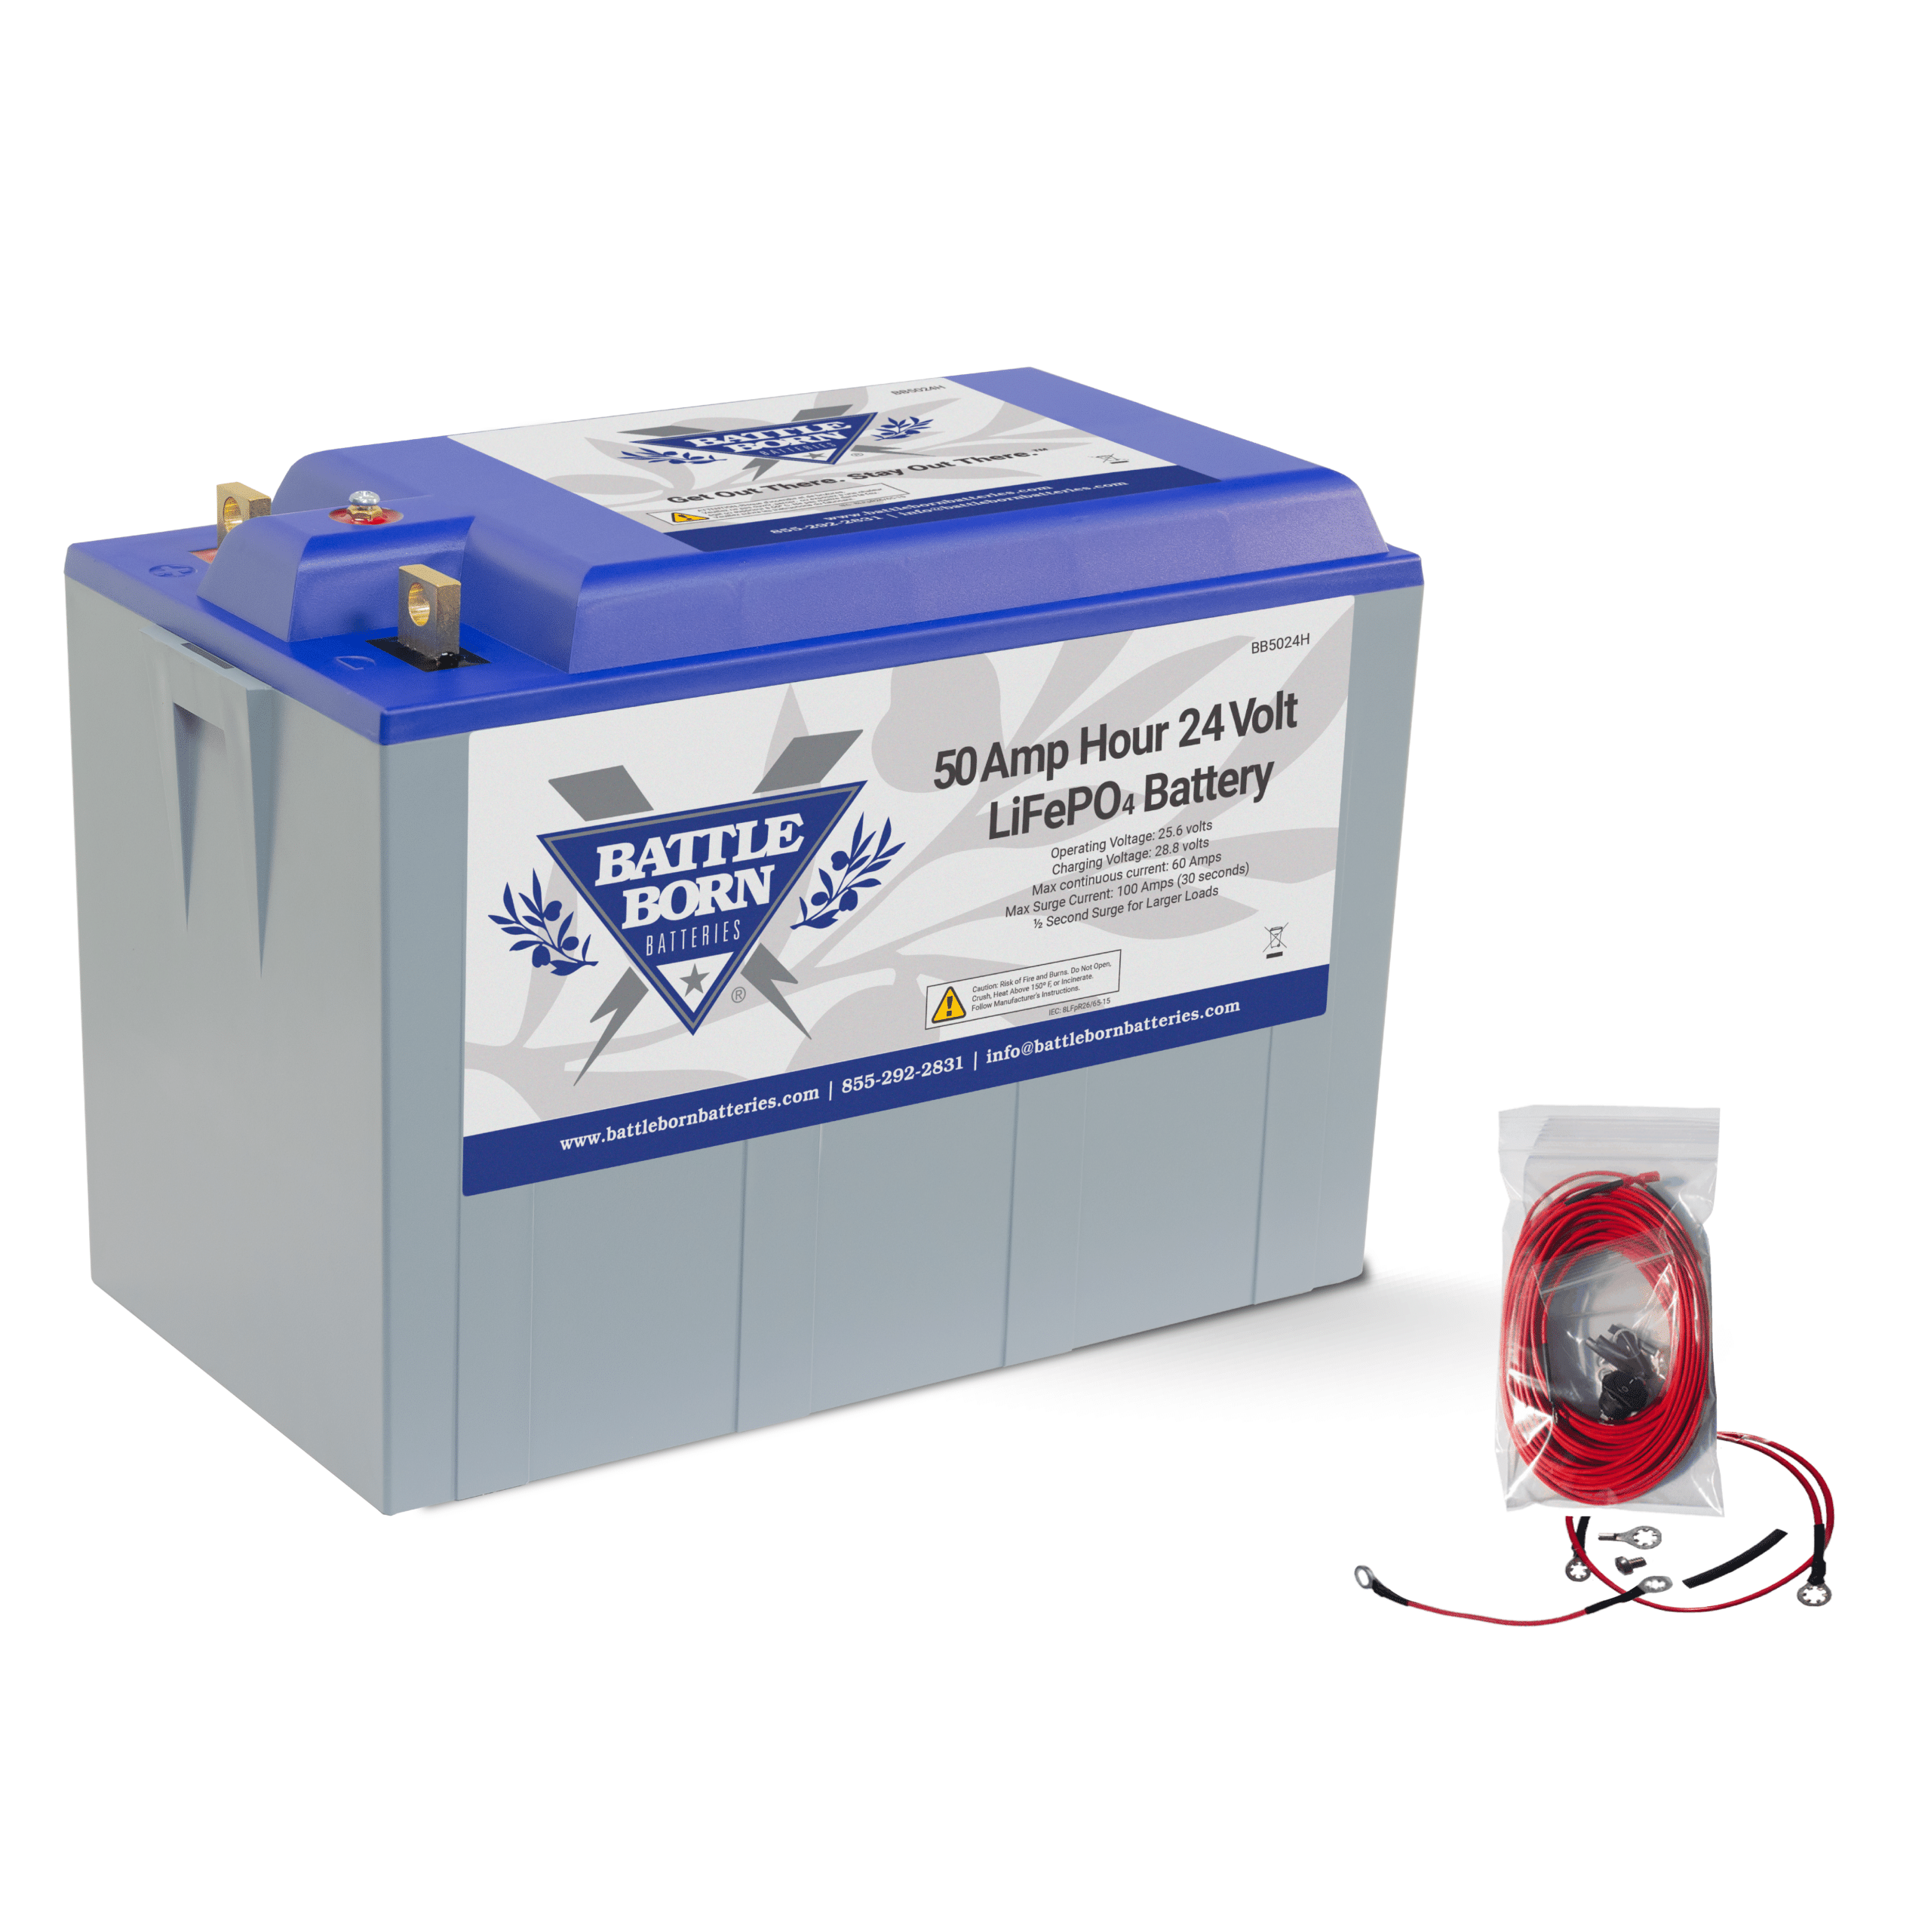 24V LiFePO4 Heated Battery Kit